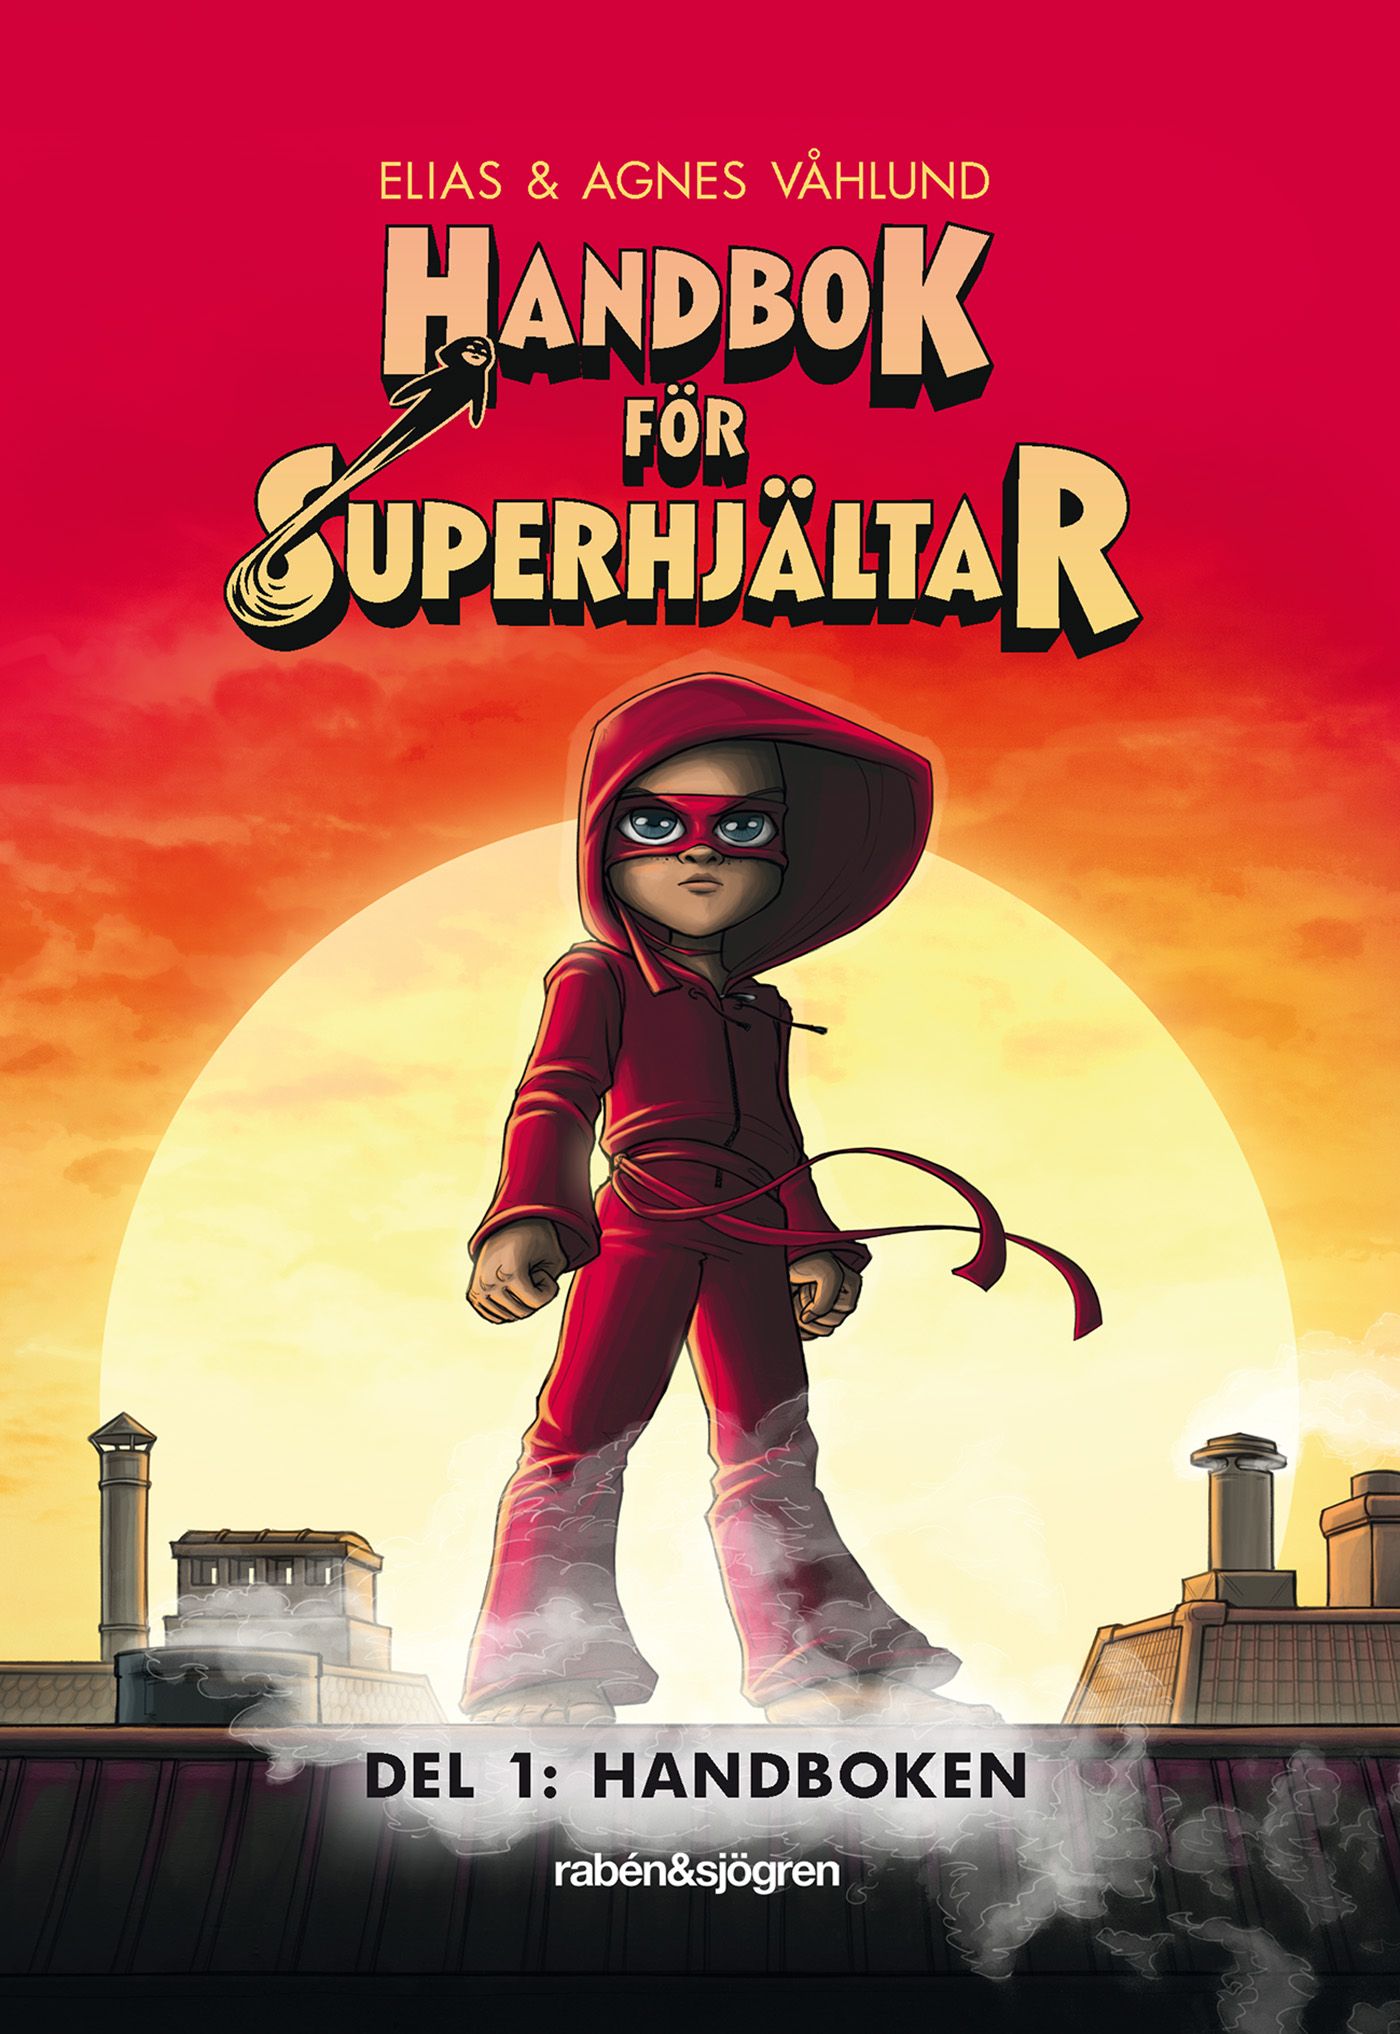 Handbok för superhjältar: Handboken, eBook by Elias Våhlund